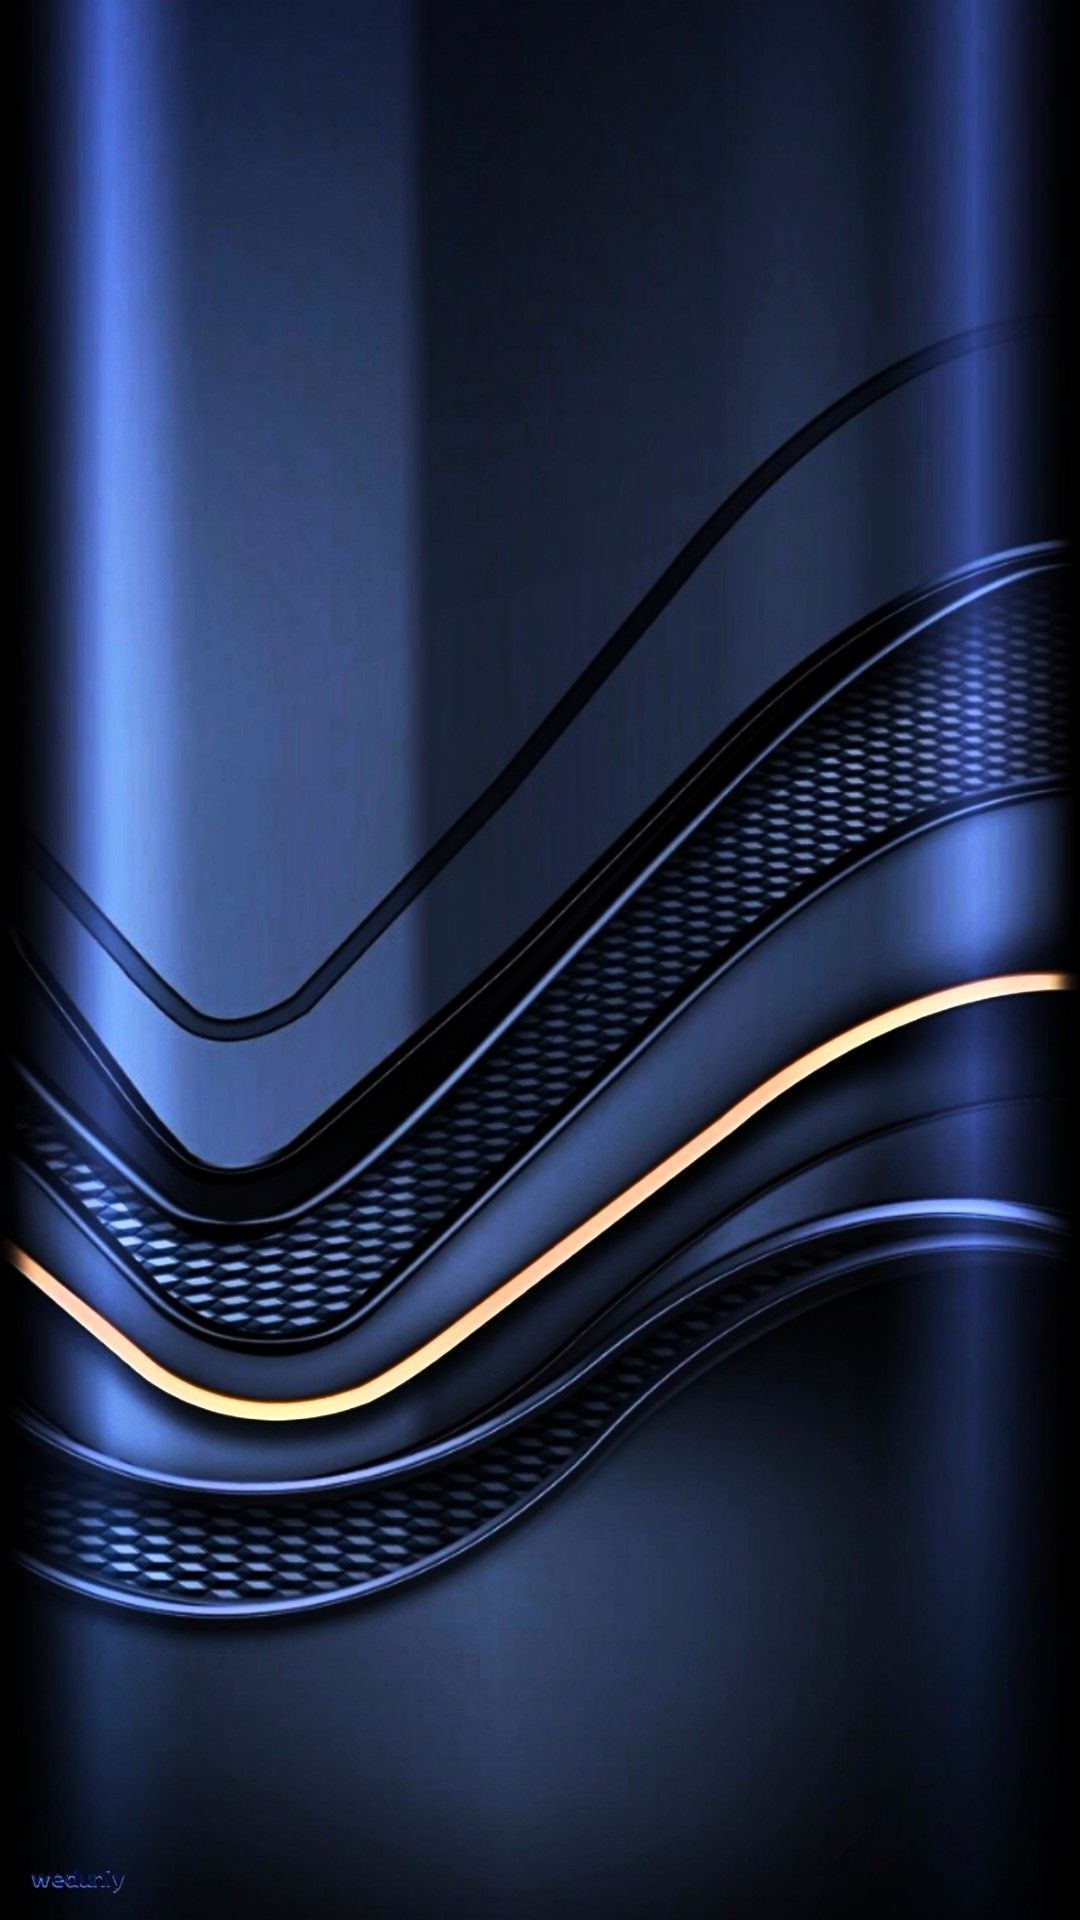 Samsung a52 wallpaper ideas. cellphone wallpaper, samsung wallpaper, background phone wallpaper